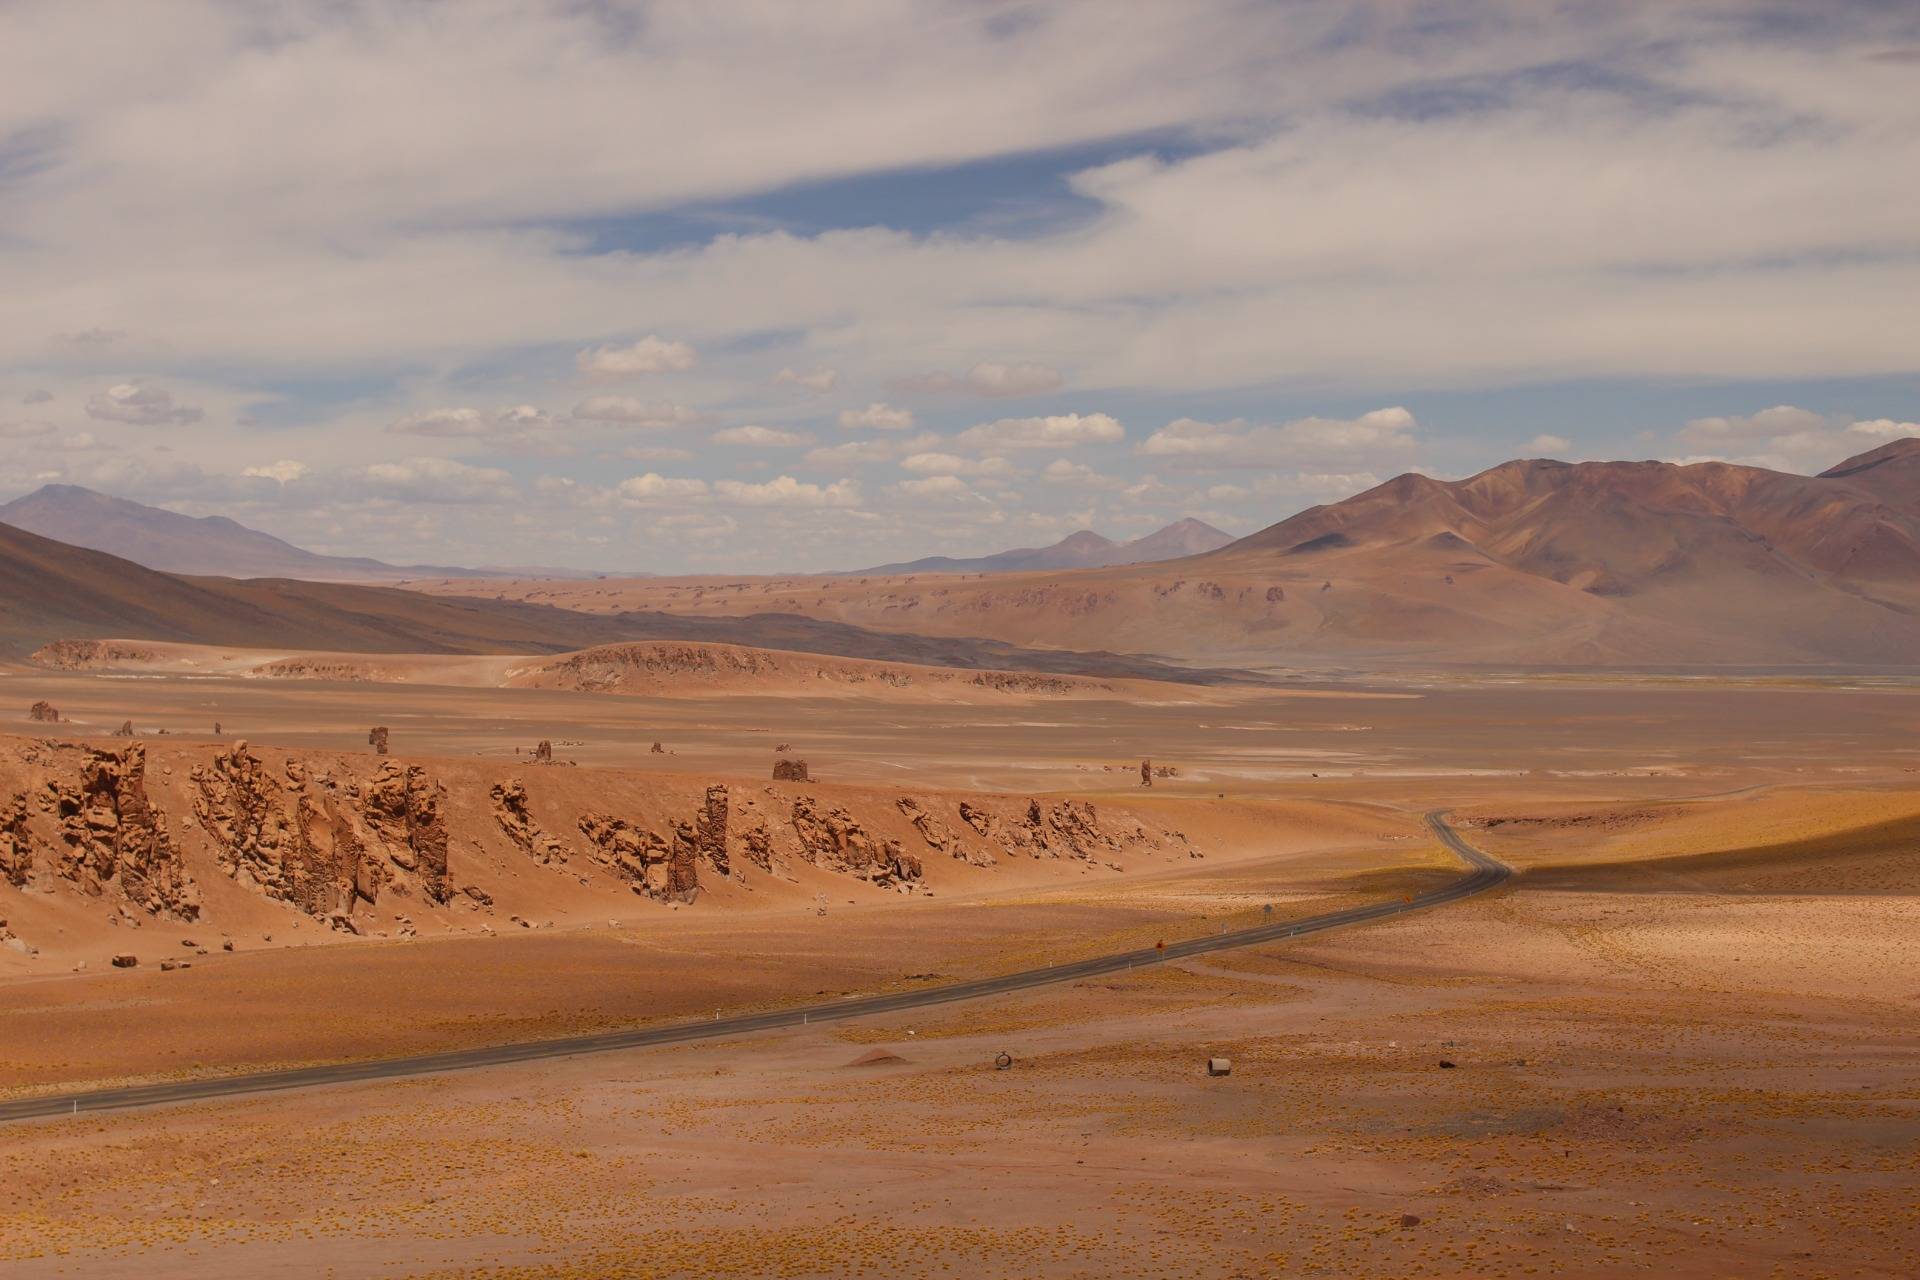 Trip to South America no. 68 Chile - Atacama